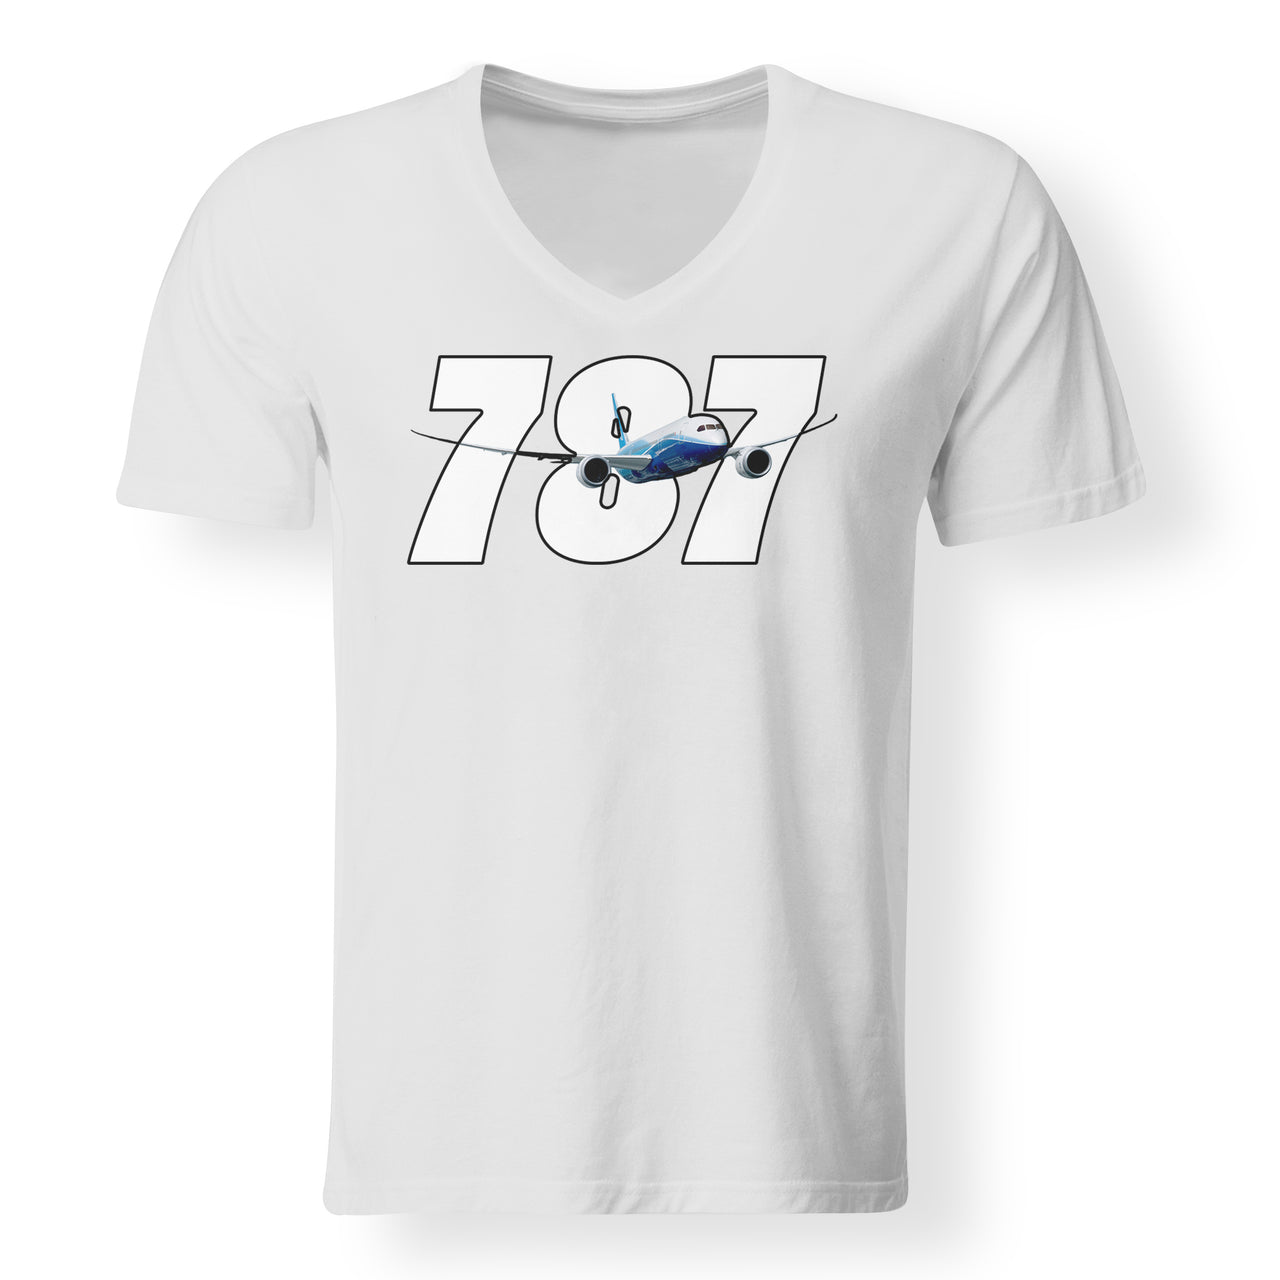 Super Boeing 787 Designed V-Neck T-Shirts